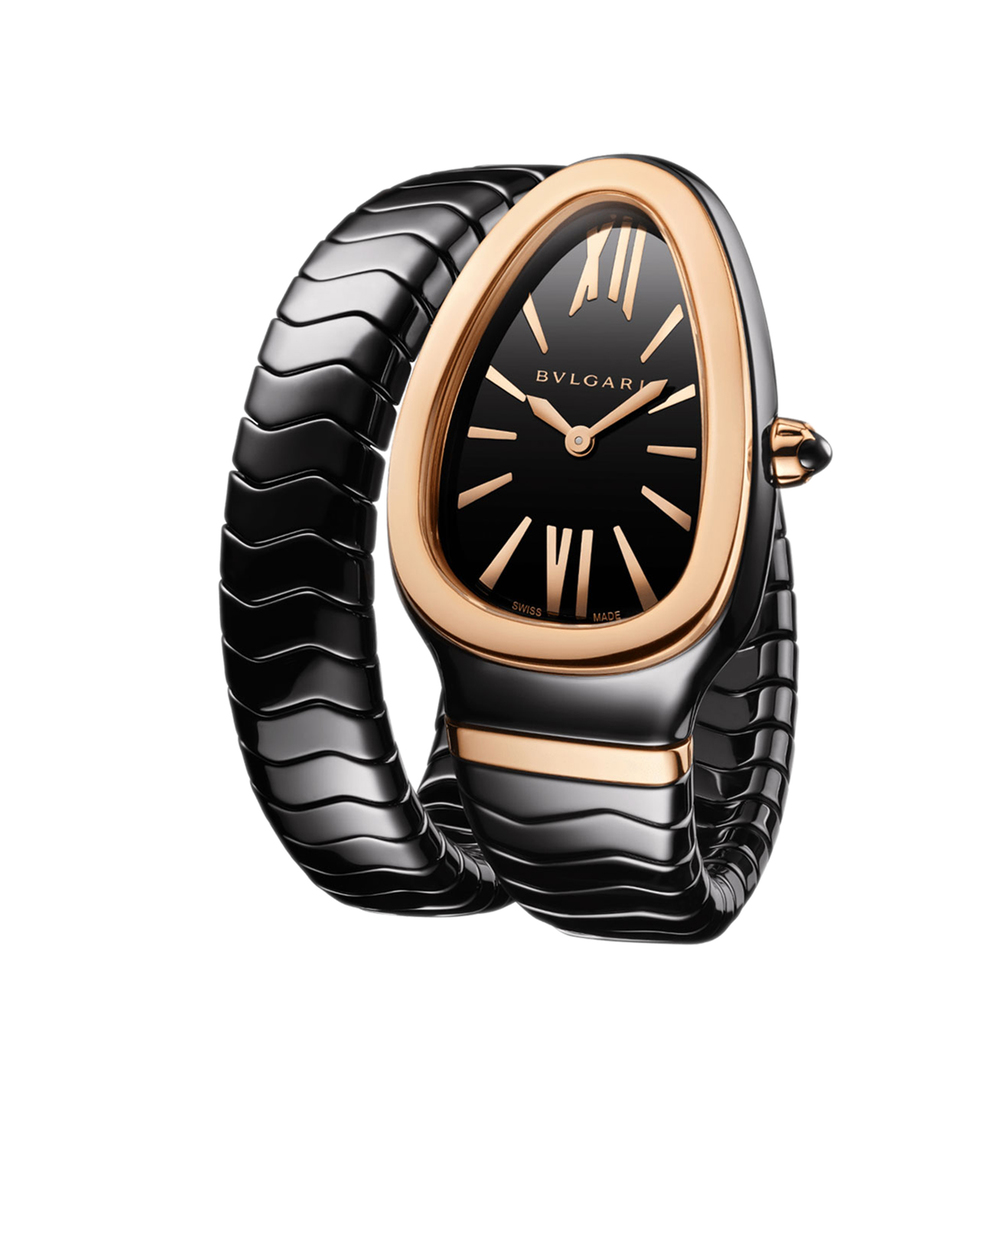 Часы Serpenti Spiga Bulgari 102735, черный цвет • Купить в интернет-магазине Kameron